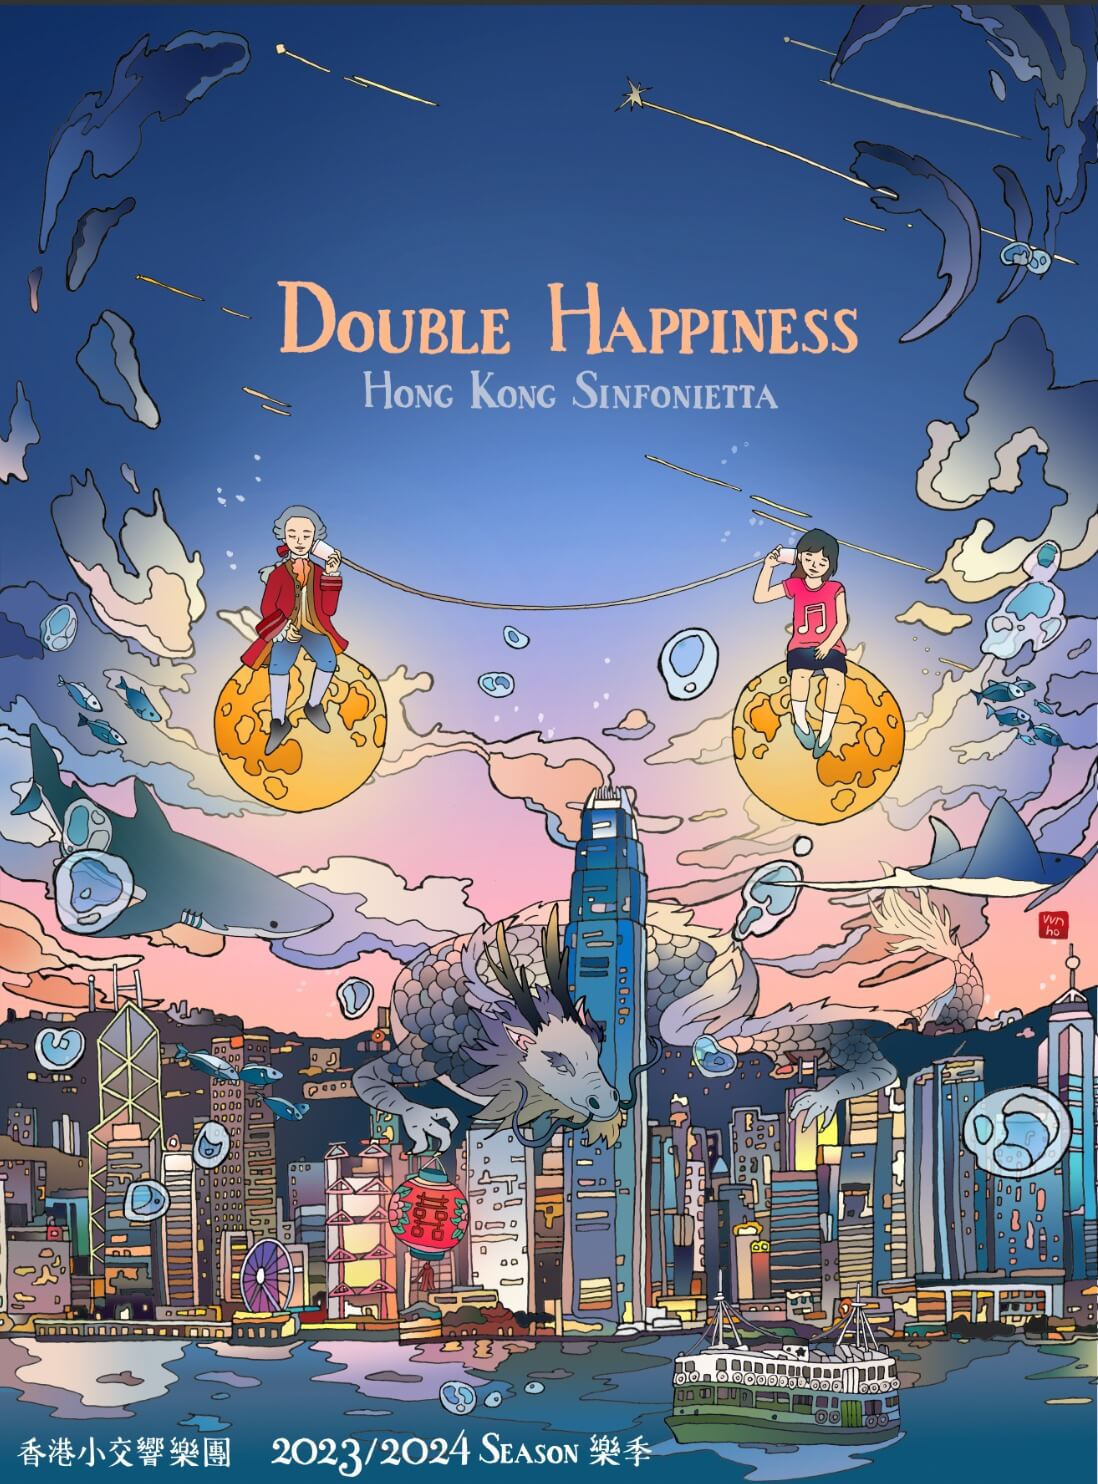 香港小交響樂團新樂季甚具本地色彩的主題封面